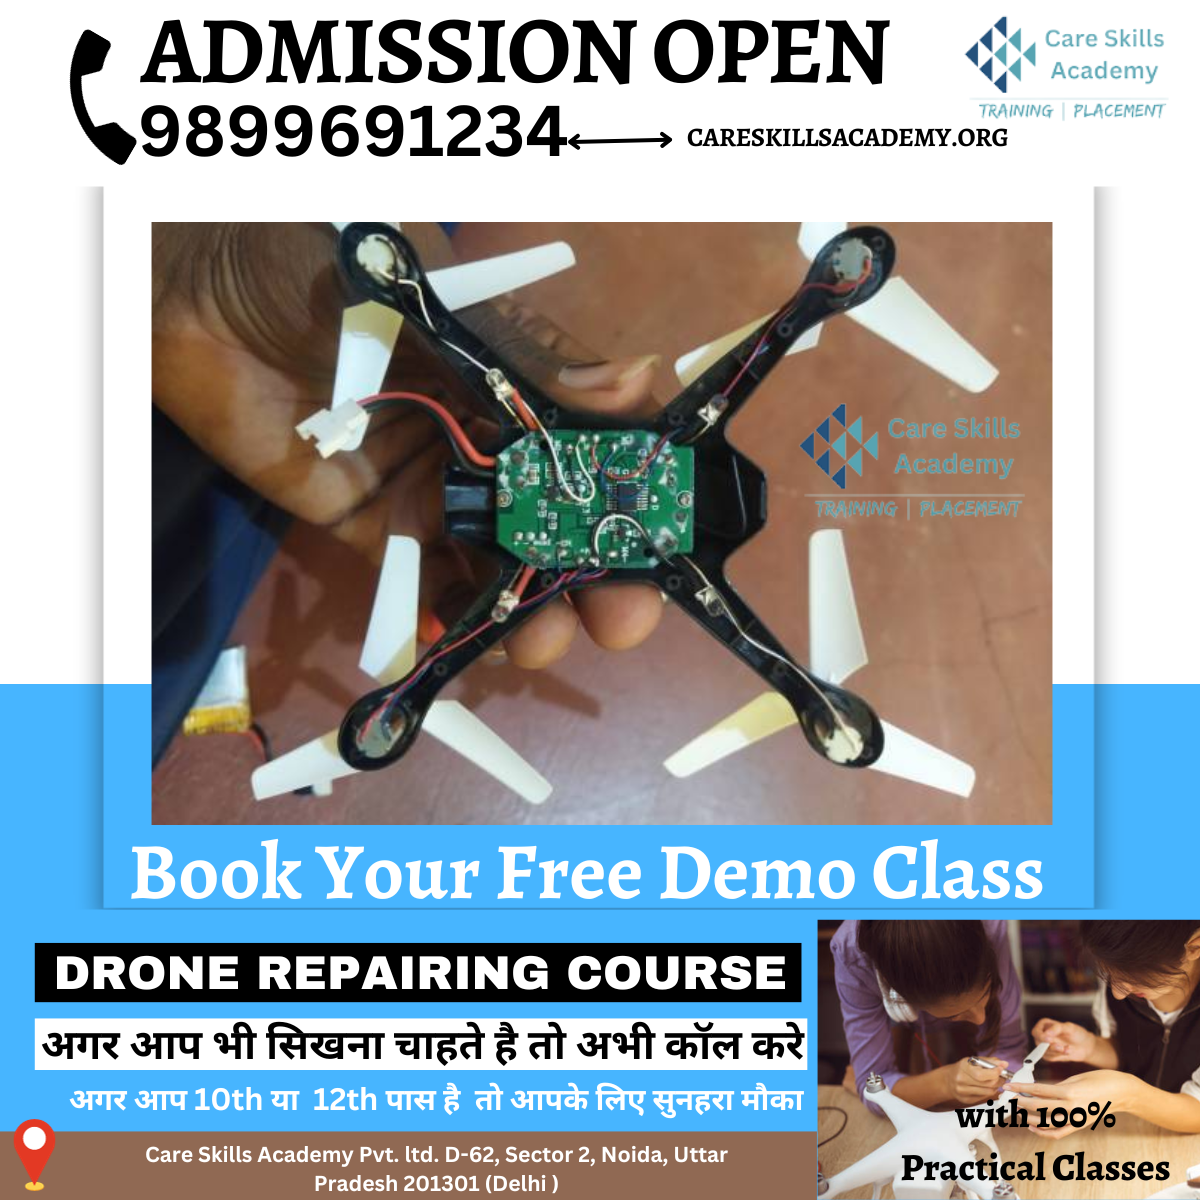 Drone Repairing Course in Delhi || Drone Technician Course in Noida | Drone Mechanic Course